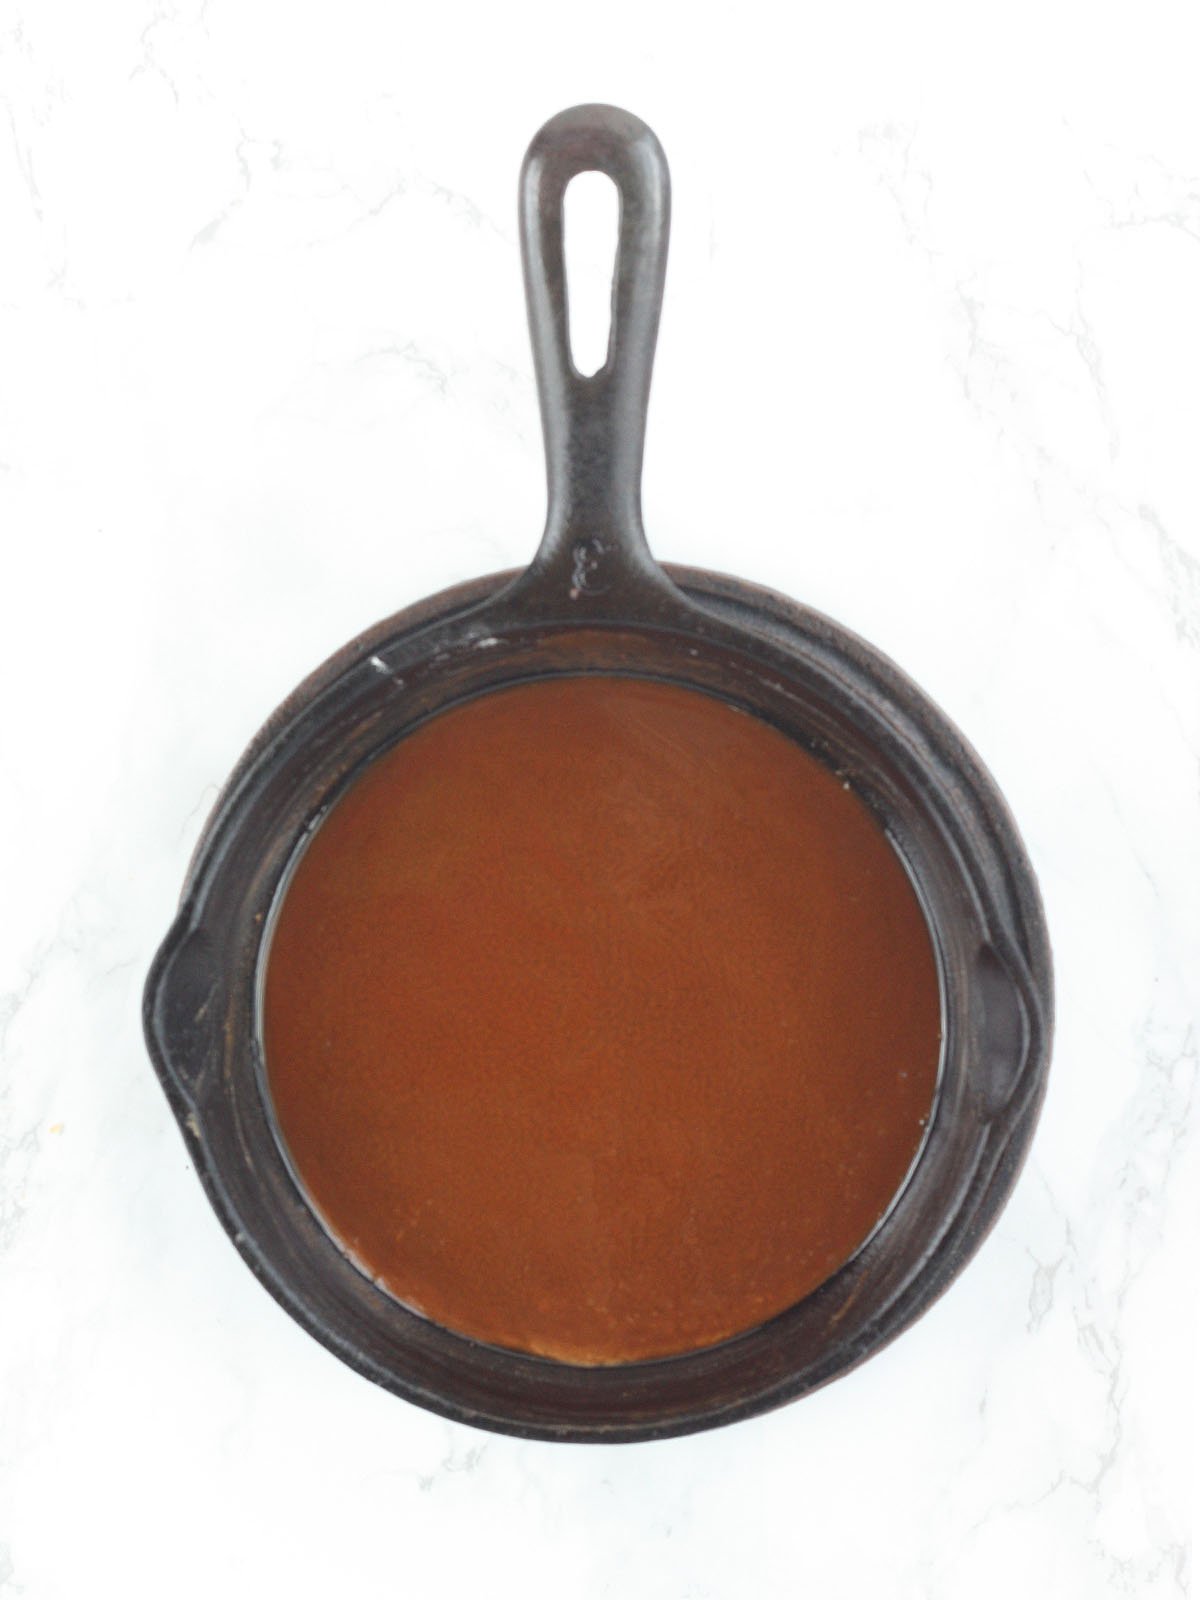 Dark brown roux in a cast iron skillet.